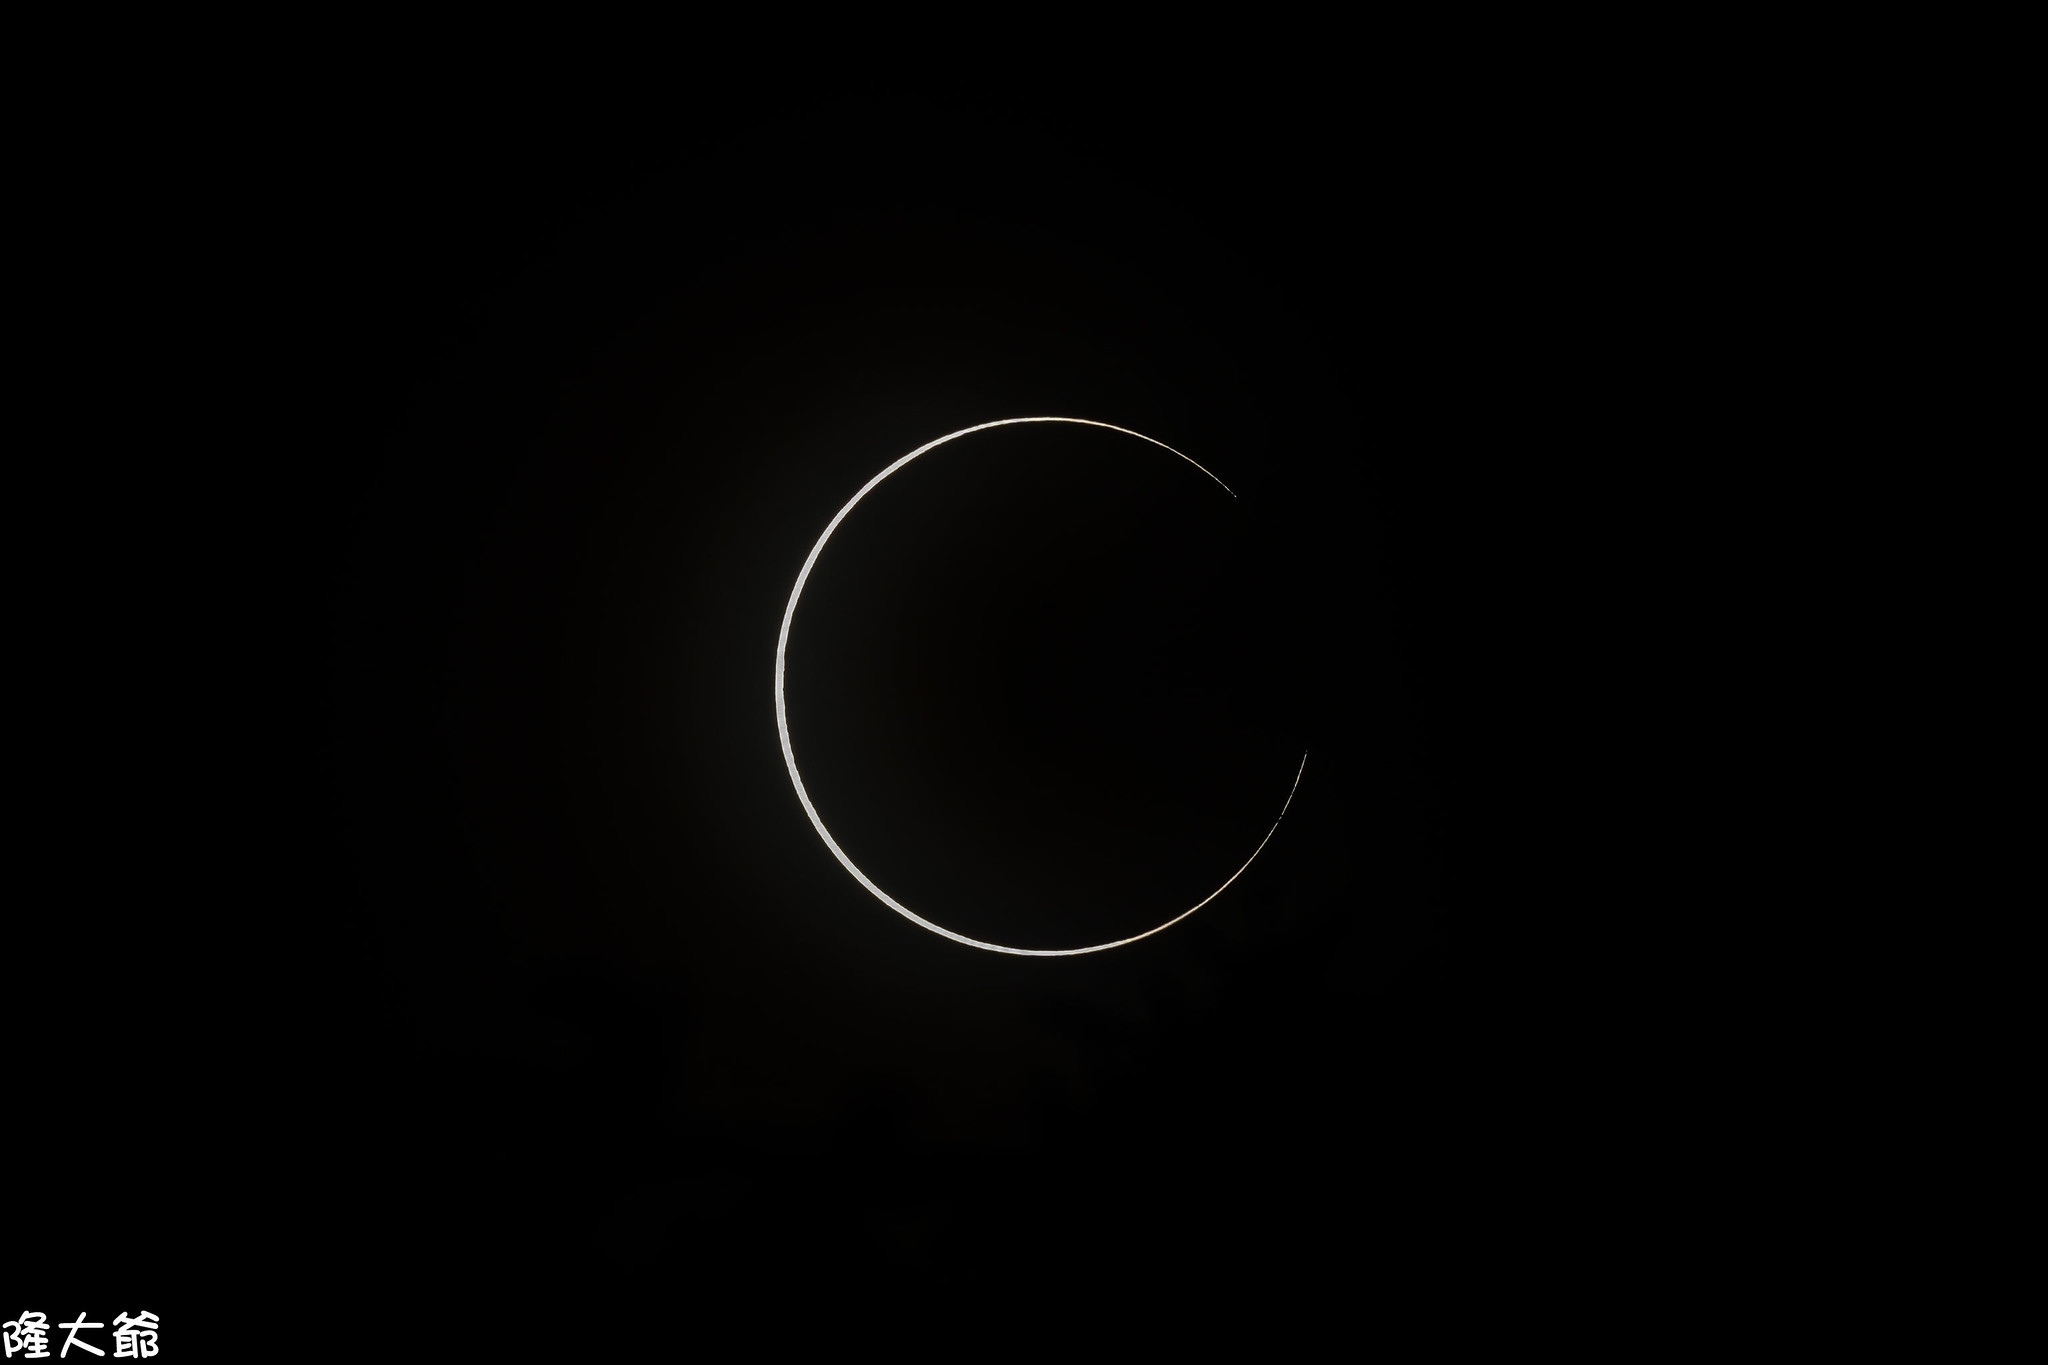 20 лучших фотографий солнечного затмения 21 июня, которое вы могли пропустить - фото 3